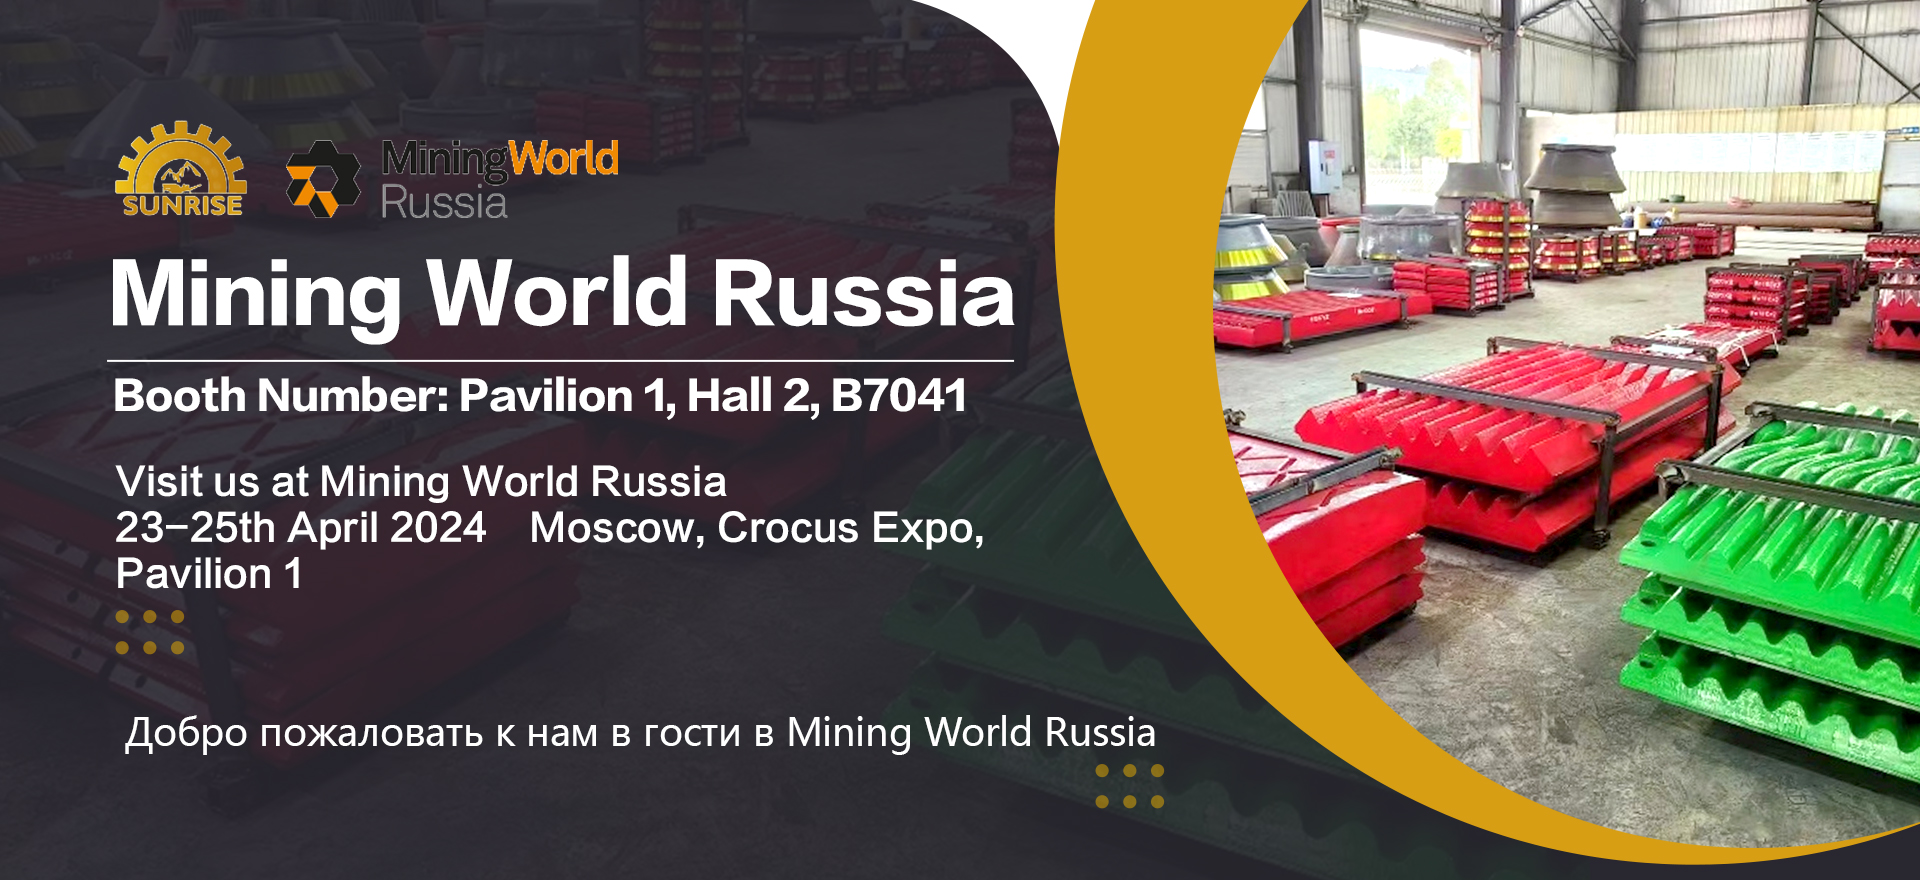 Sunrise Machinery ќе присуствува на рударскиот свет Русија 2024 година